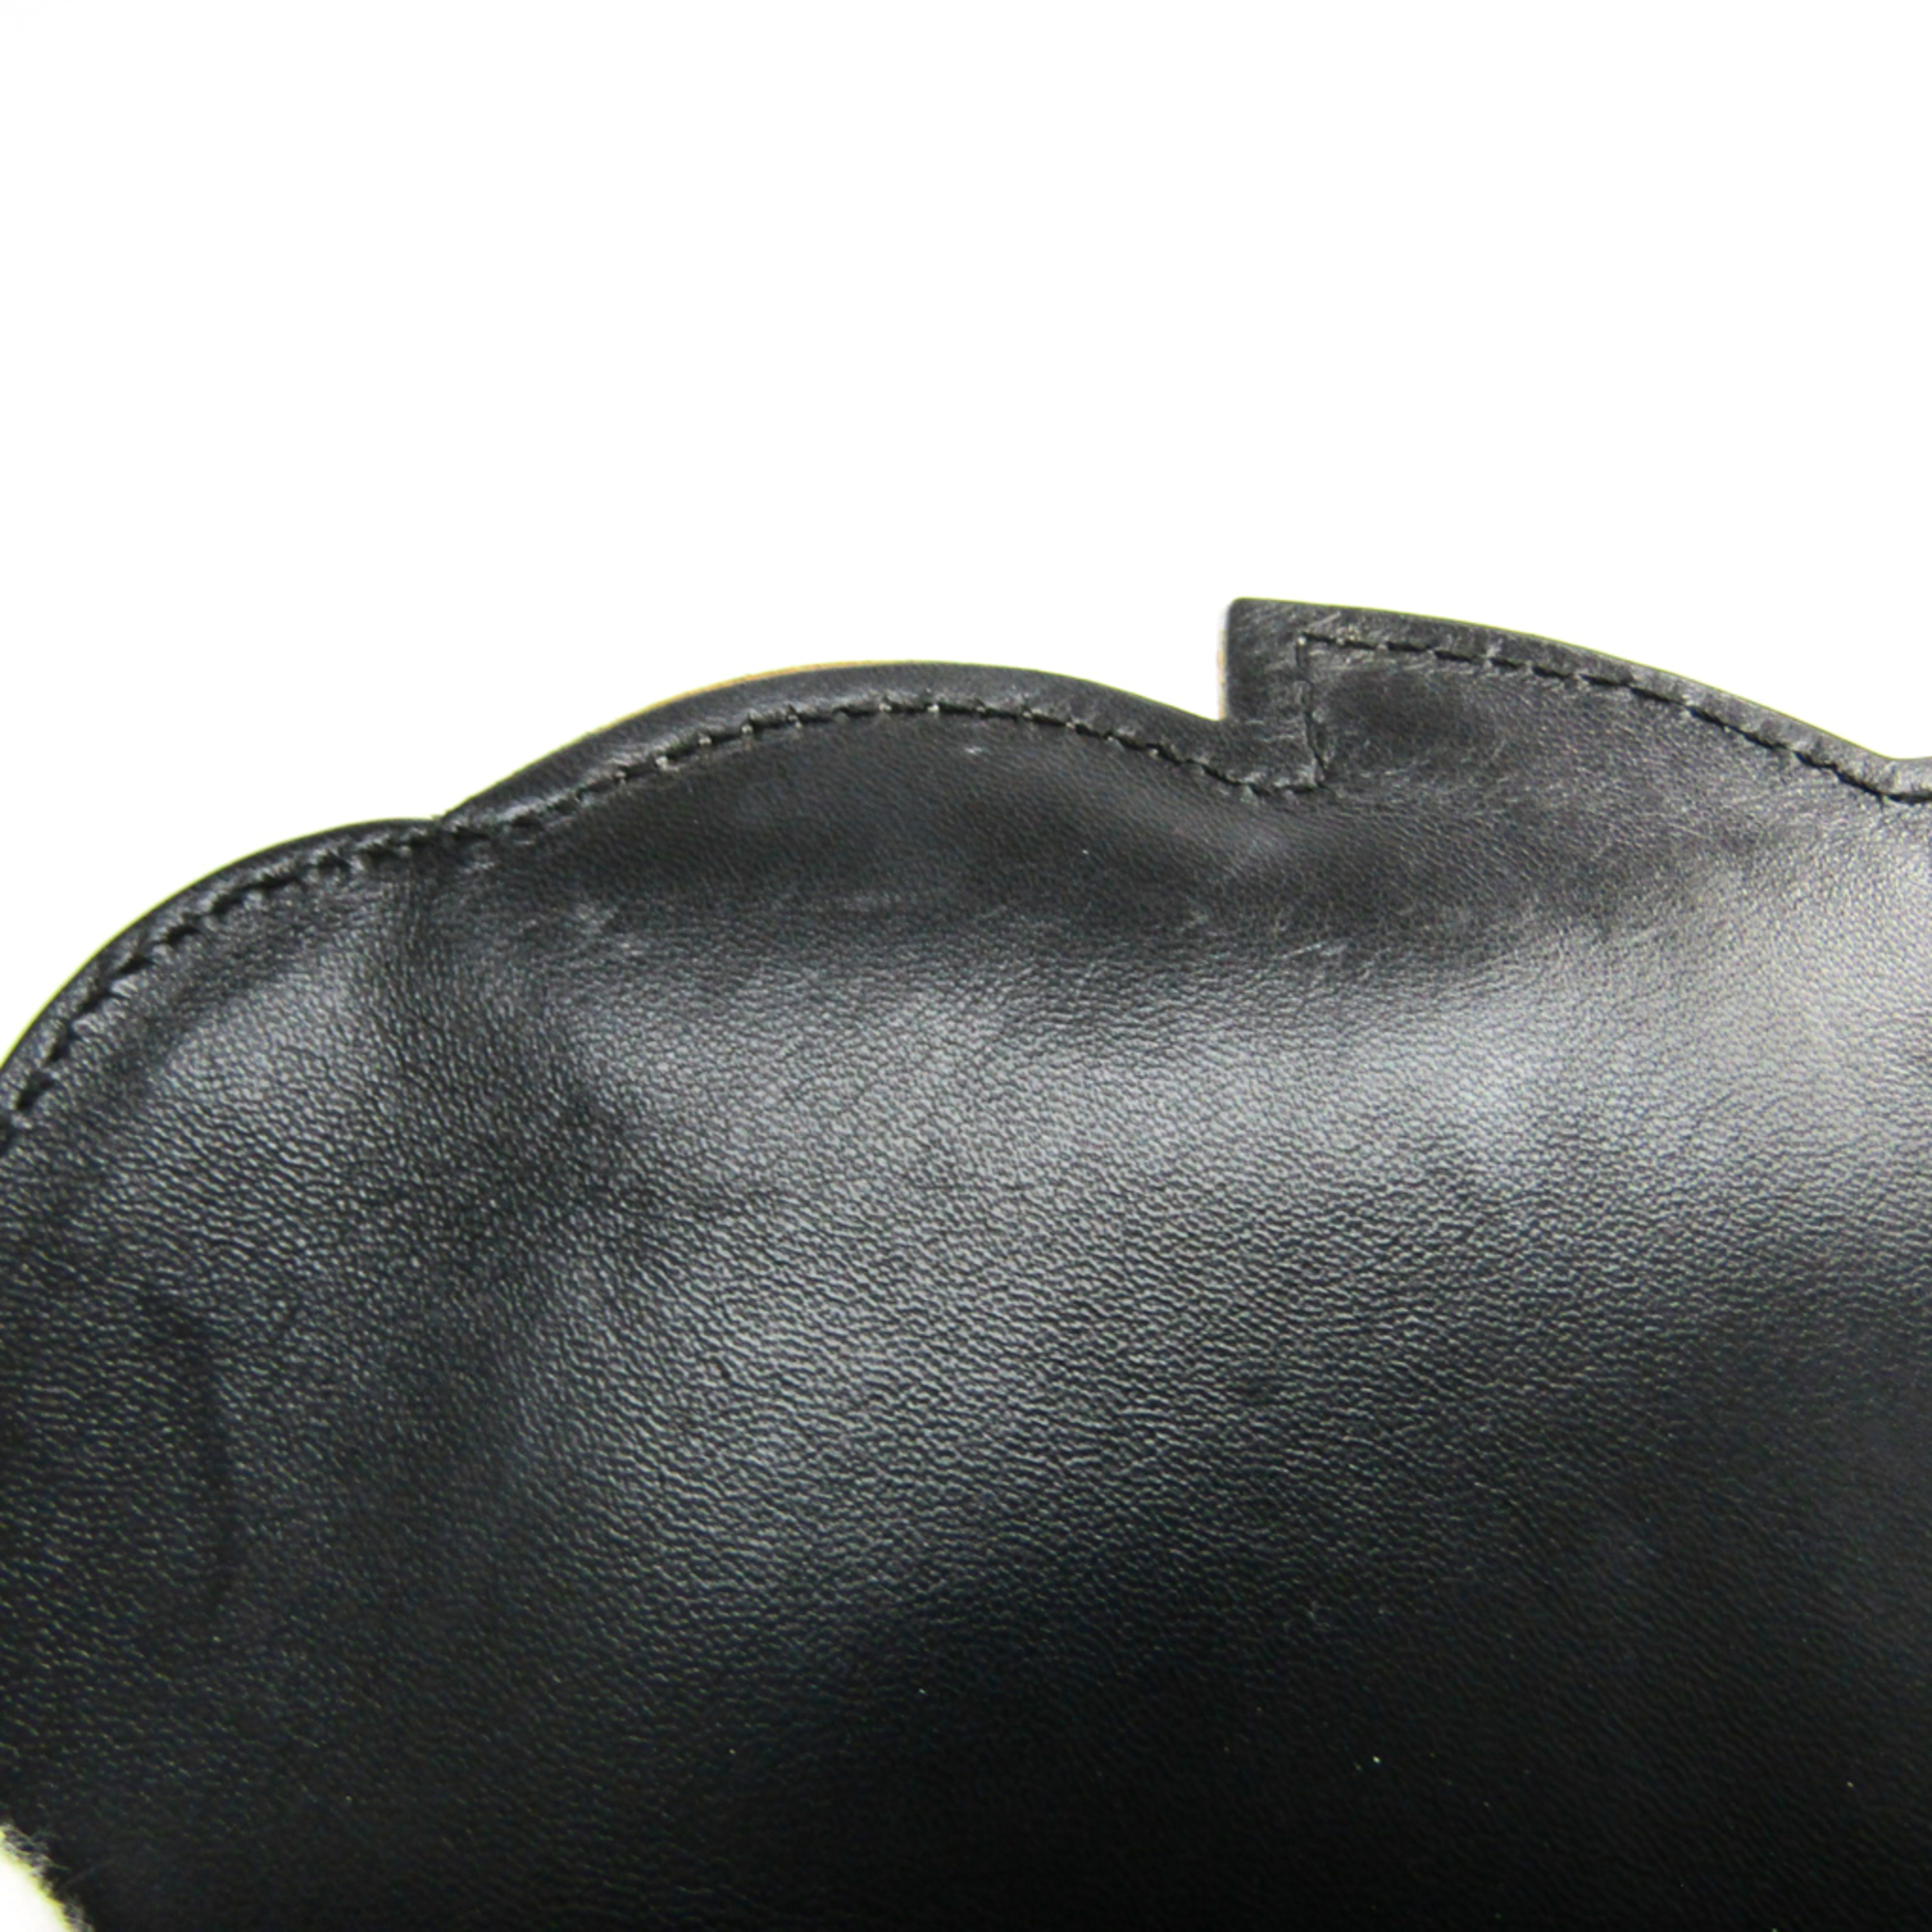 Chanel Symbol 5 Leather,Canvas Shoulder Bag Black,White